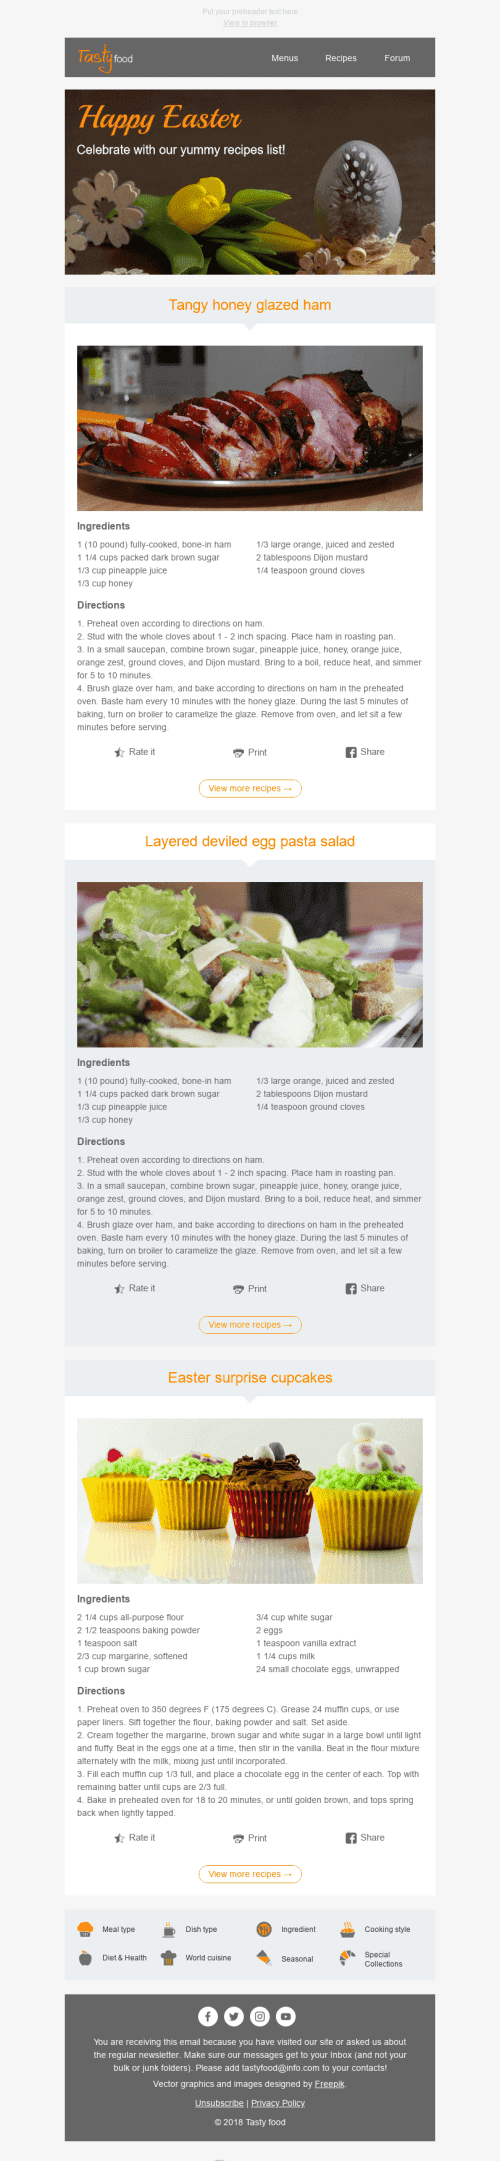 Plantilla de correo electrónico "Las mejores recetas" de Semana Santa para la industria de Gastronomía Vista de escritorio